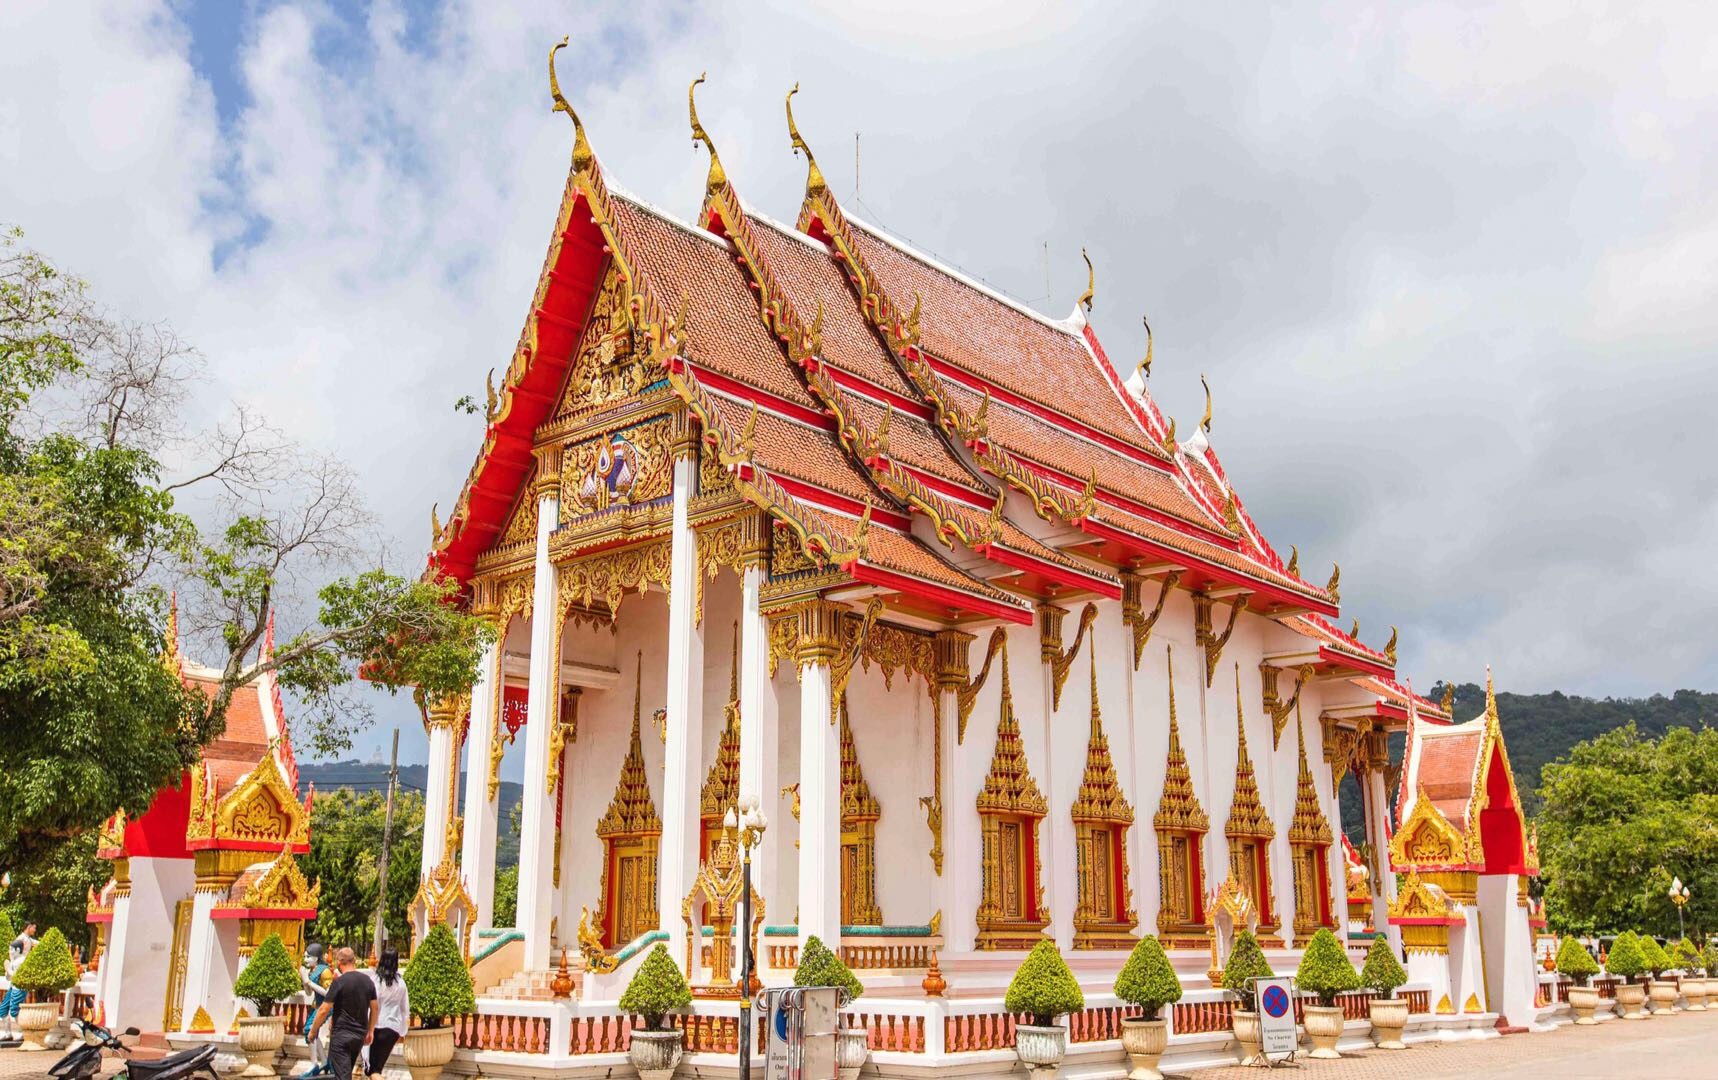 泰国普吉岛之行,唯一参观的寺庙就是查龙寺